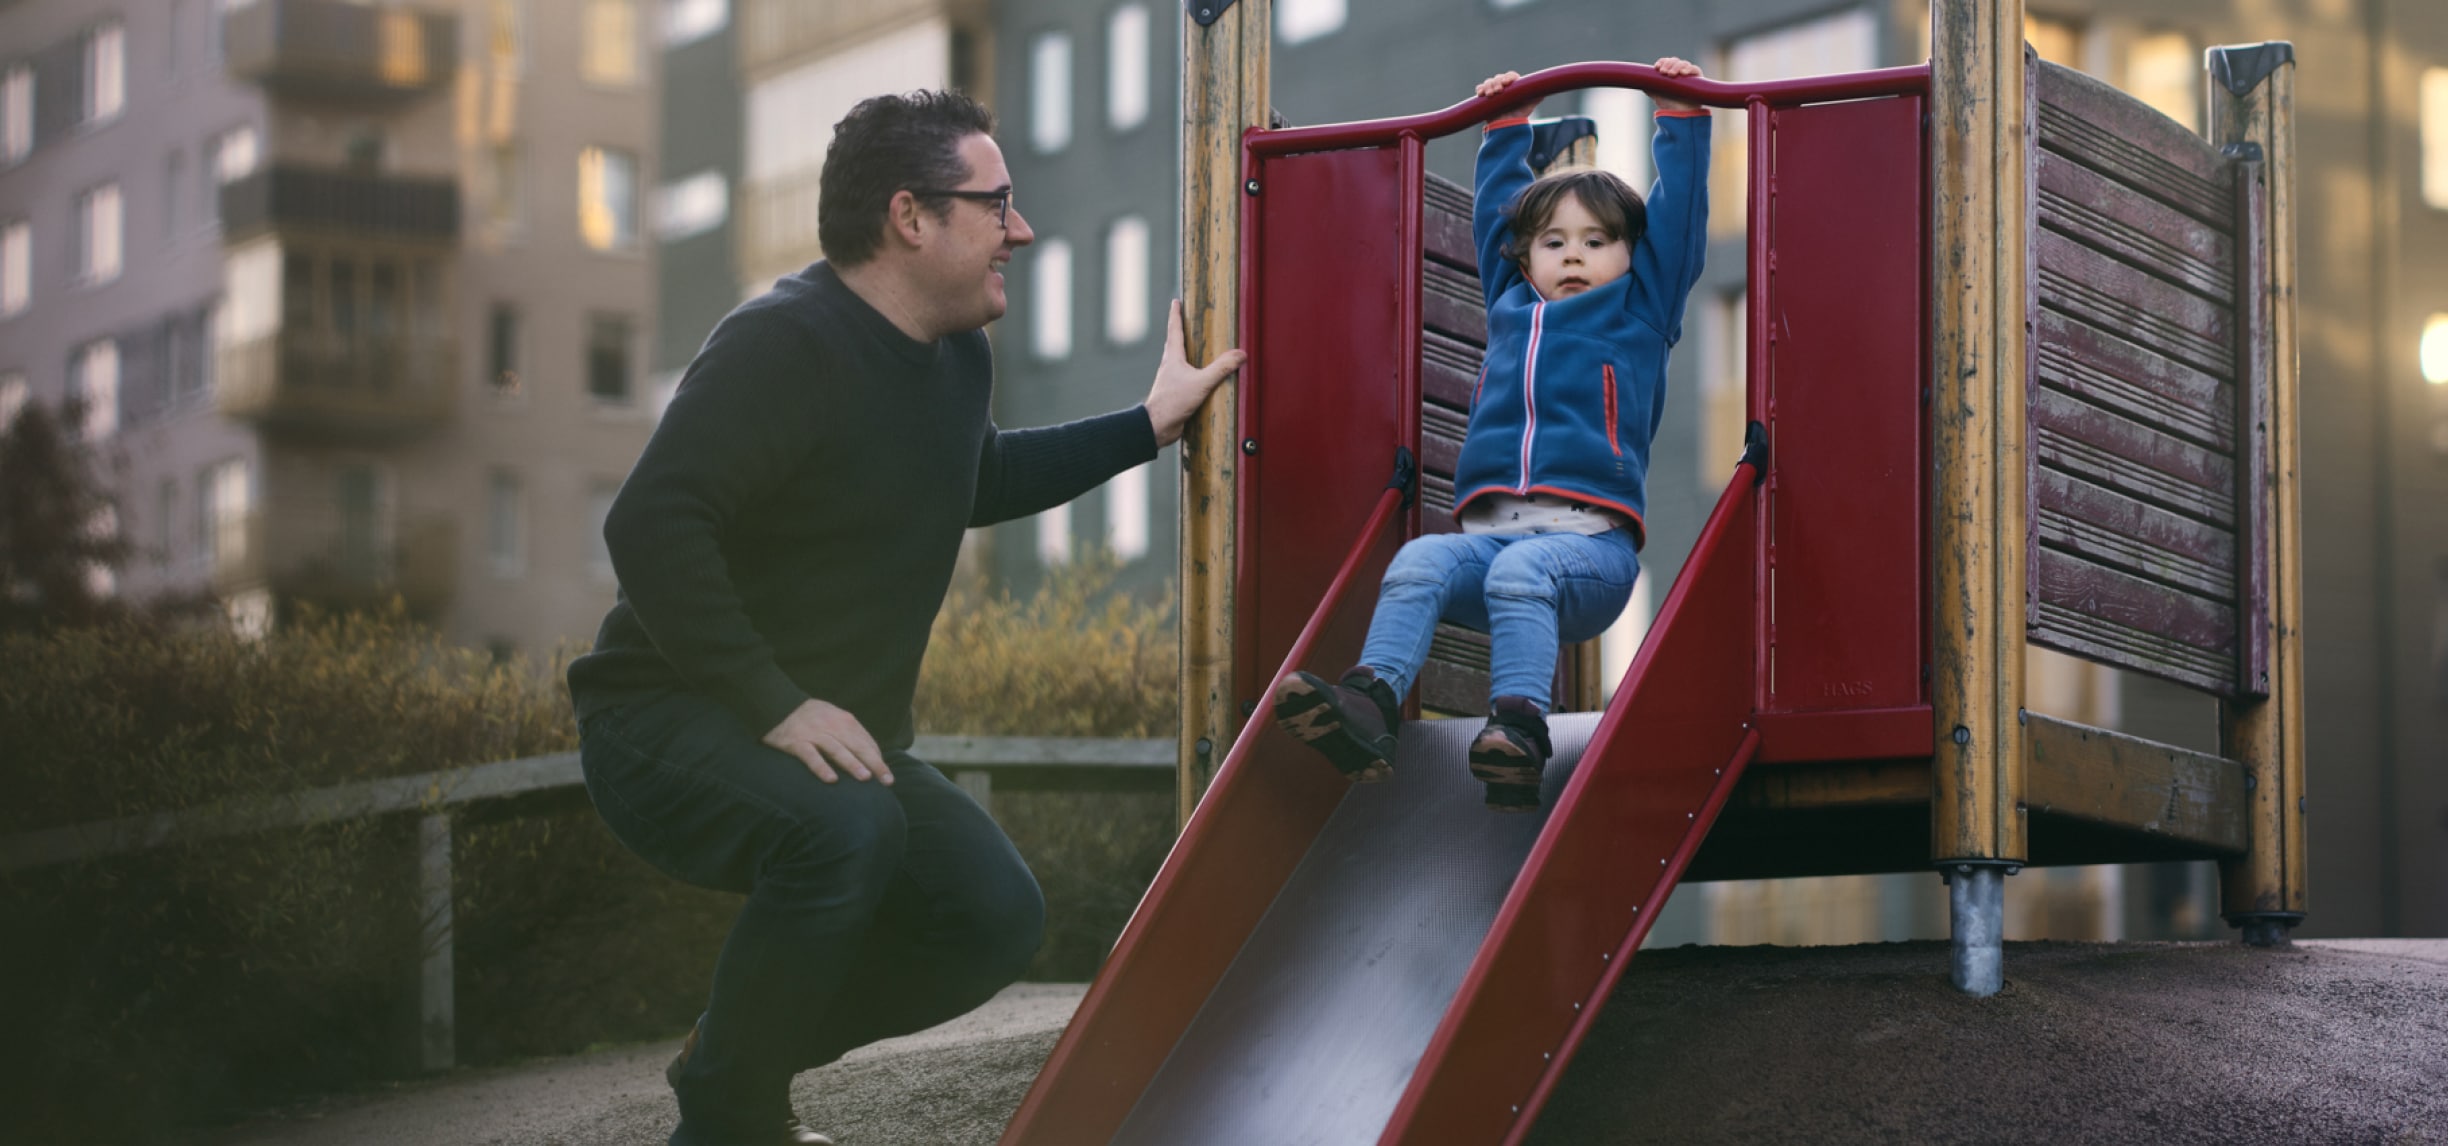 Een man die glimlacht naar een peuter die van een glijbaan glijdt in een speeltuin voor kinderen.